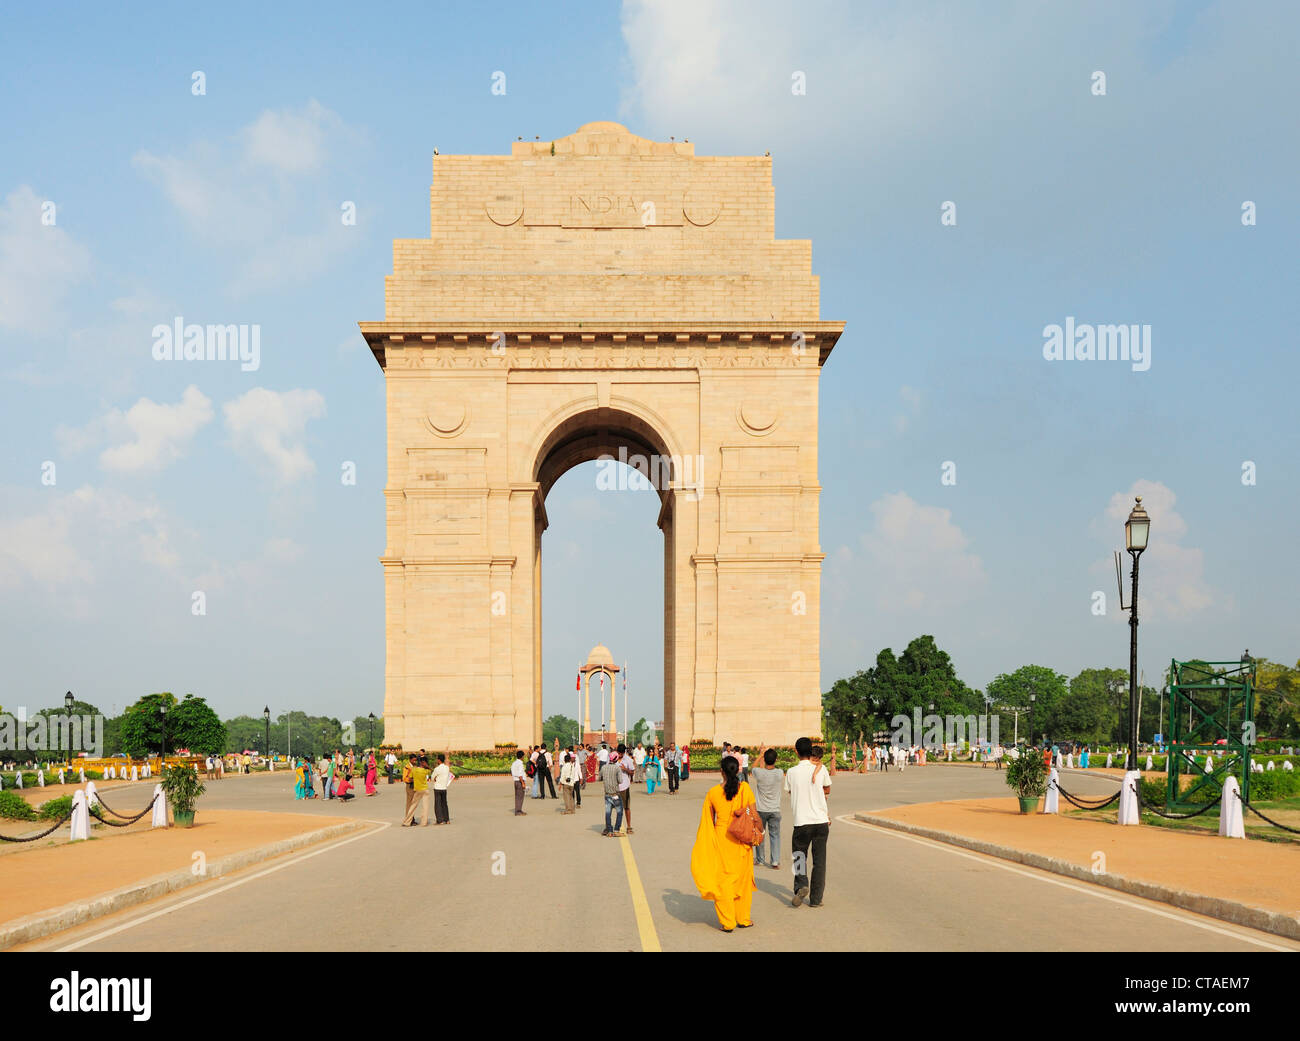 India Gate, New Delhi, Delhi, India Stock Photo